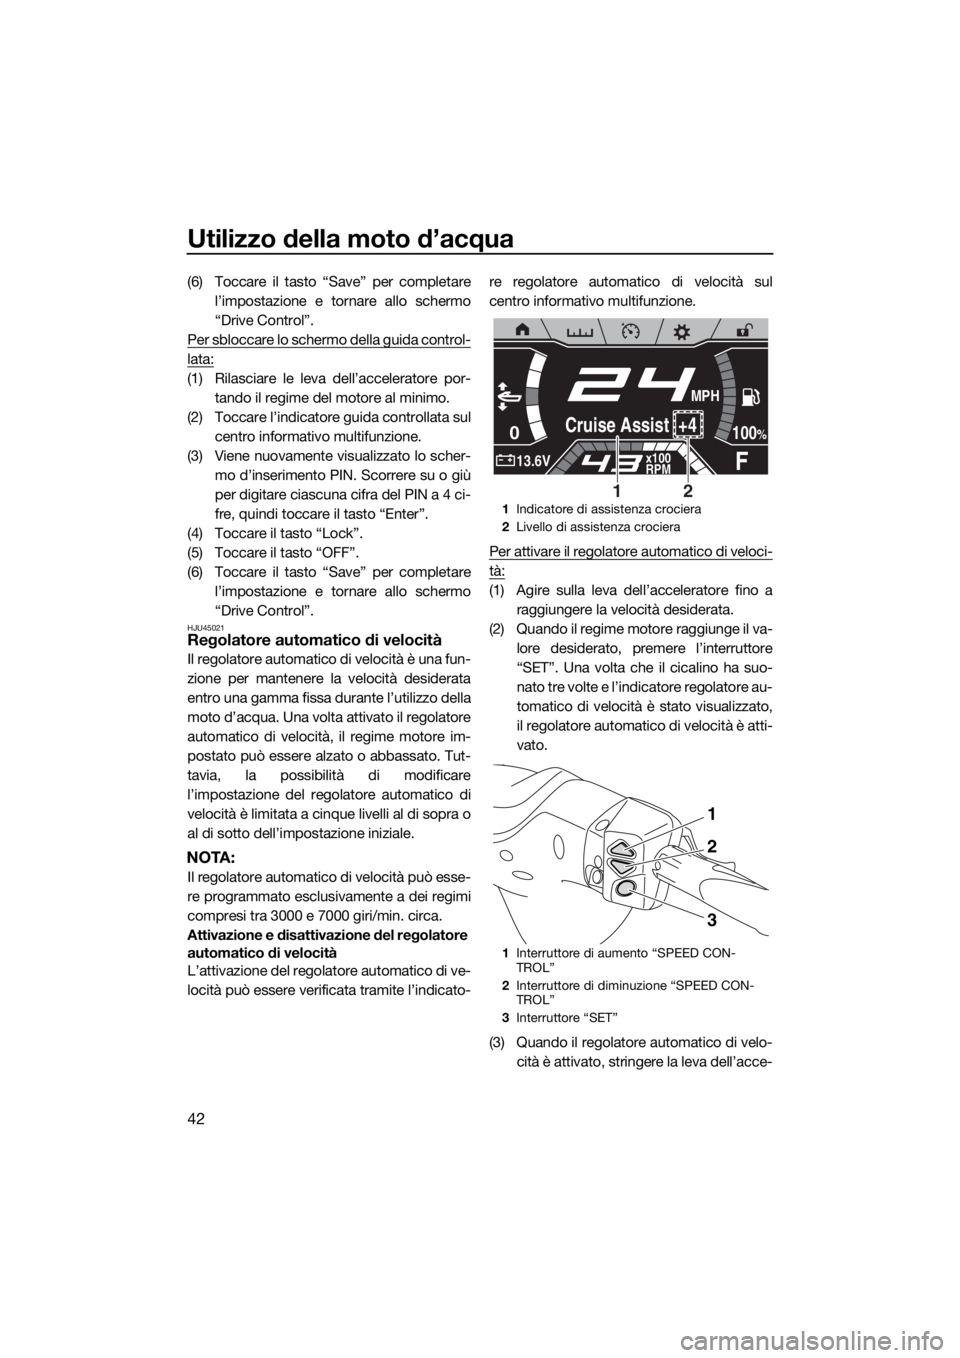 YAMAHA FX SVHO 2019  Manuale duso (in Italian) Utilizzo della moto d’acqua
42
(6) Toccare il tasto “Save” per completare
l’impostazione e tornare allo schermo
“Drive Control”.
Per sbloccare lo schermo della guida control-
lata:
(1) Ril